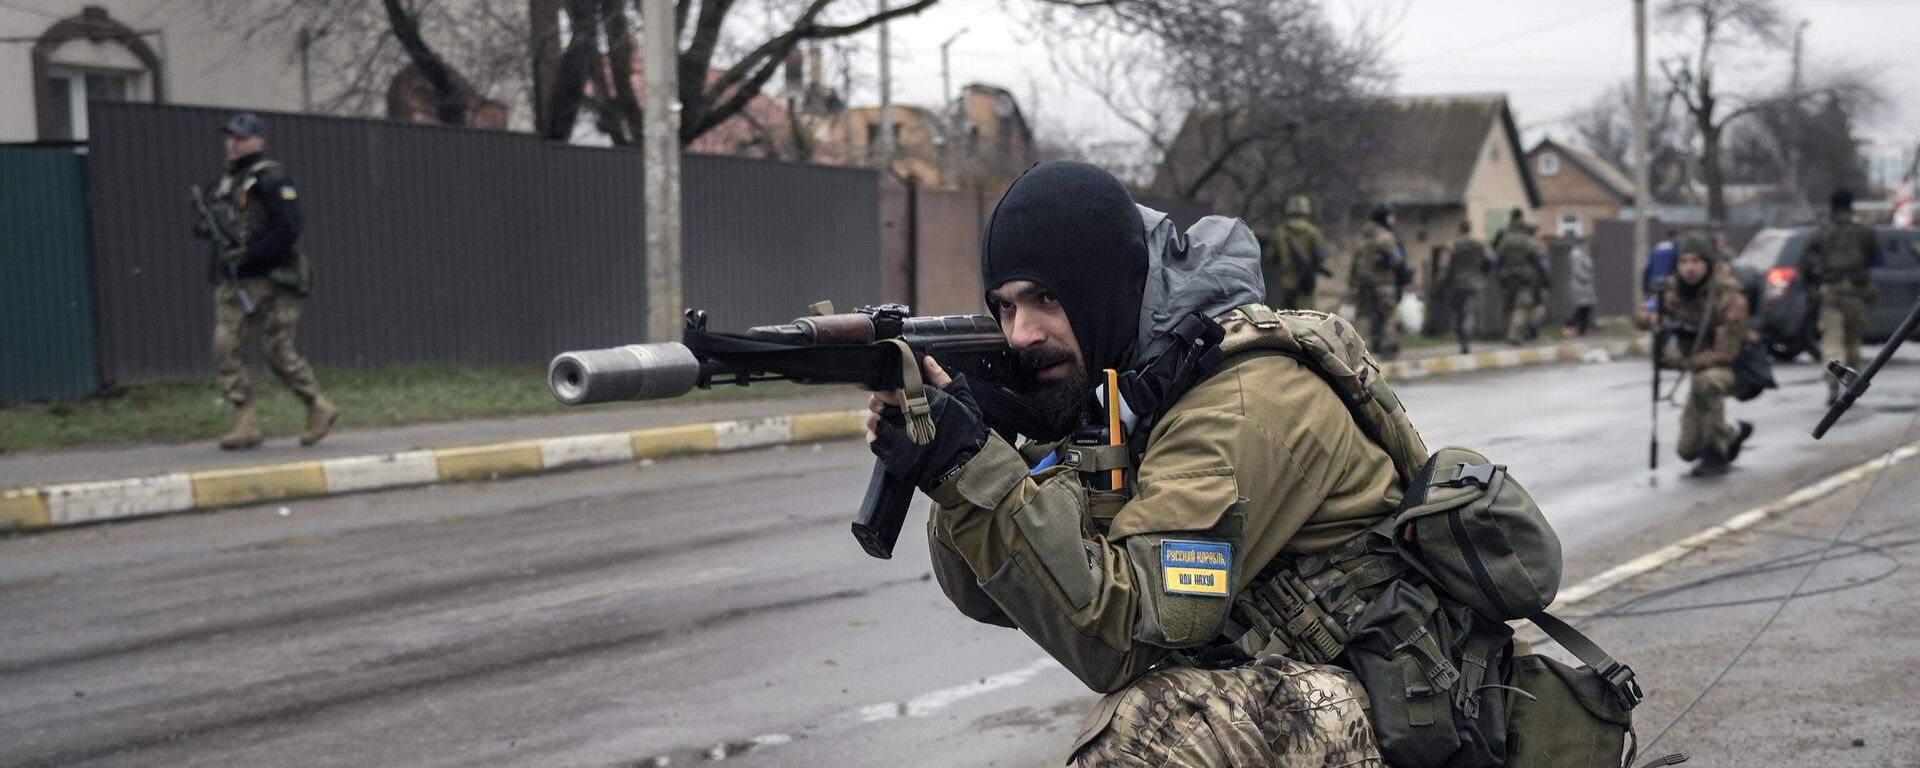 Украинские военнослужащие в пригороде Киева Буче, 2 апреля 2022 года - Sputnik Latvija, 1920, 11.04.2022